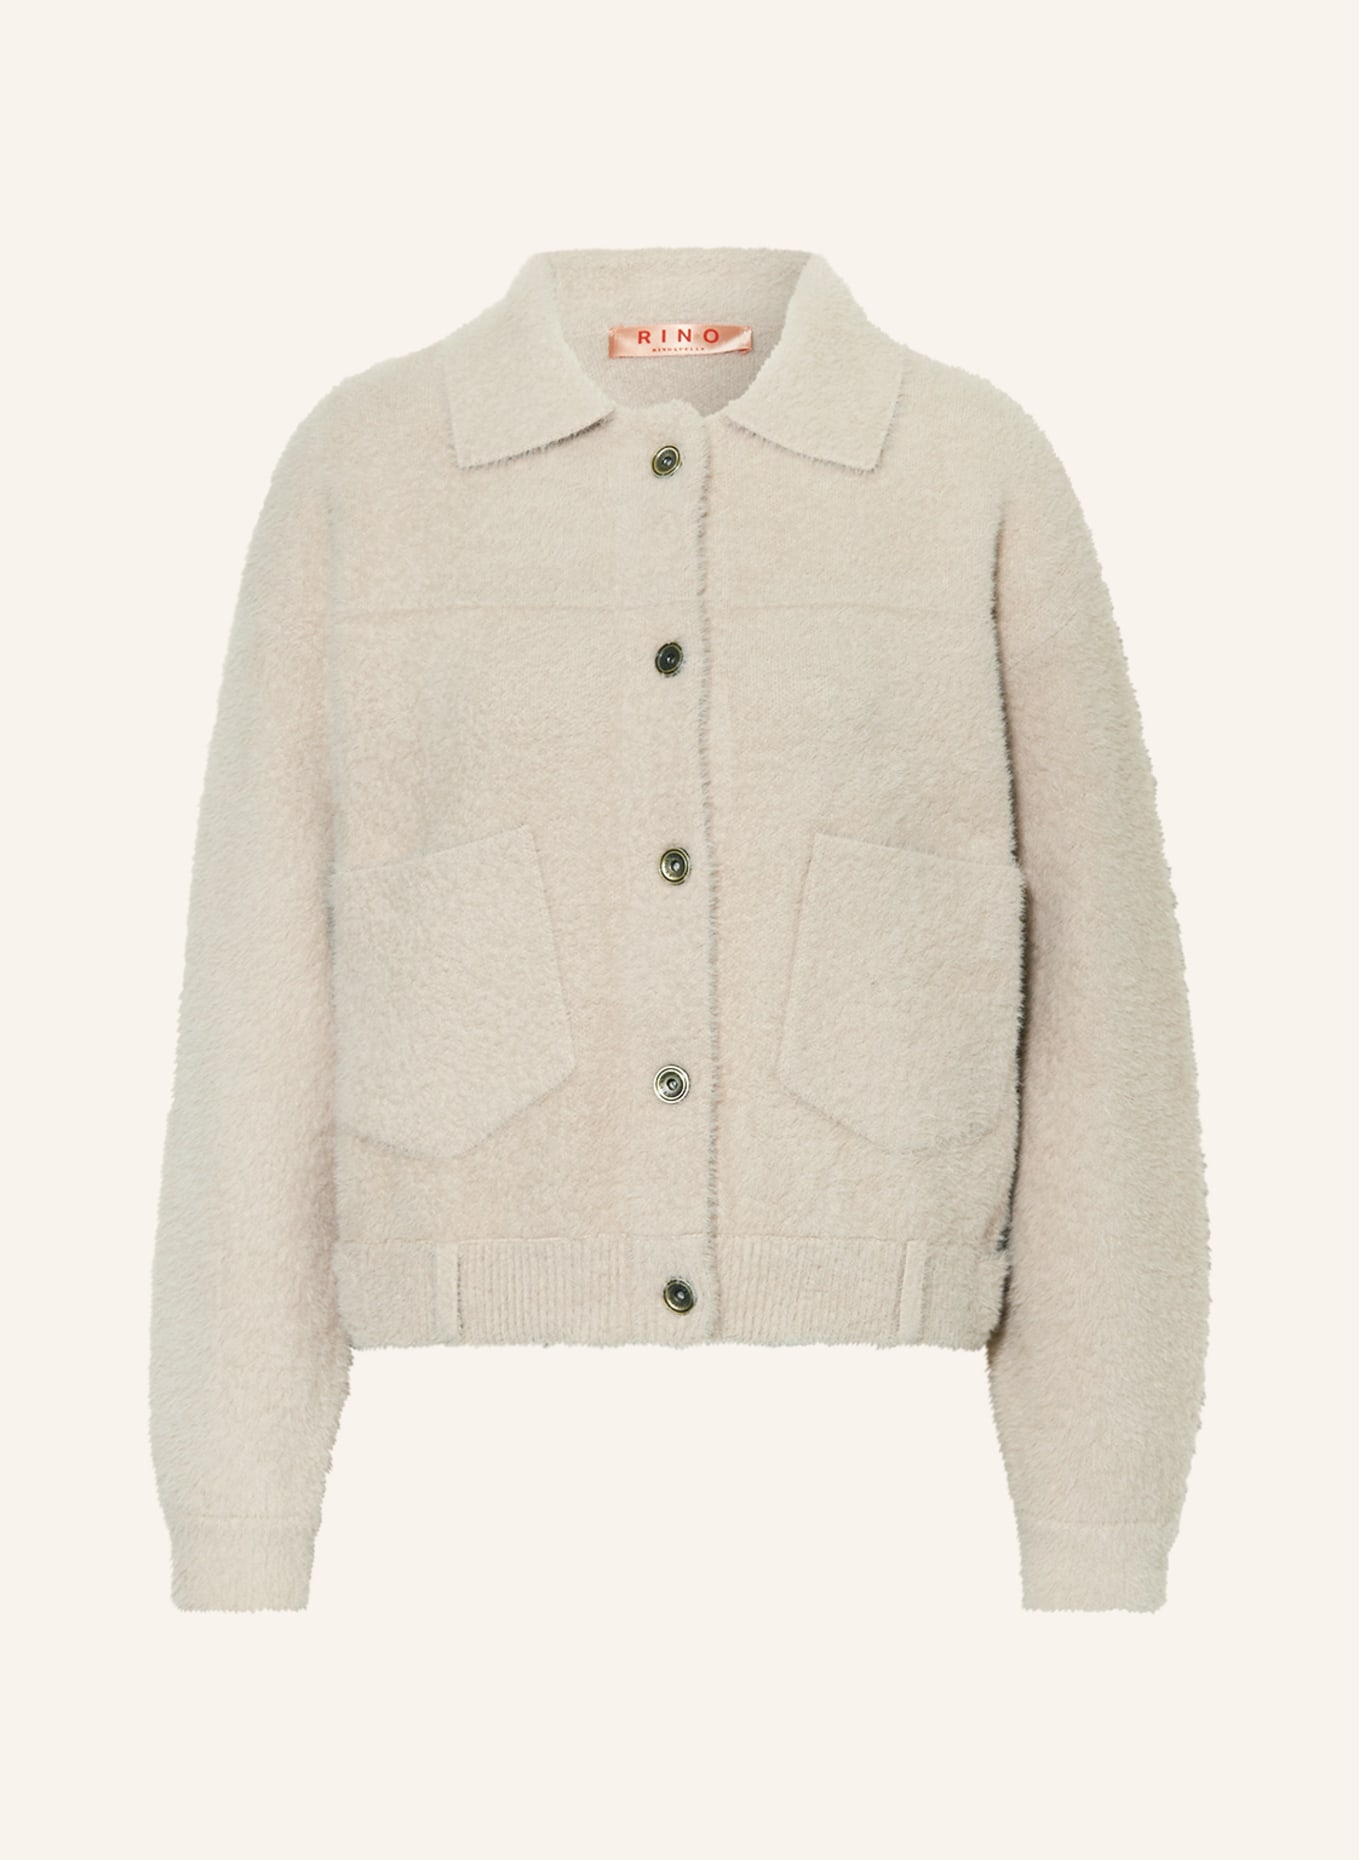 зимняя куртка rino Кардиган RINO & PELLE BUBBLY, кремовый